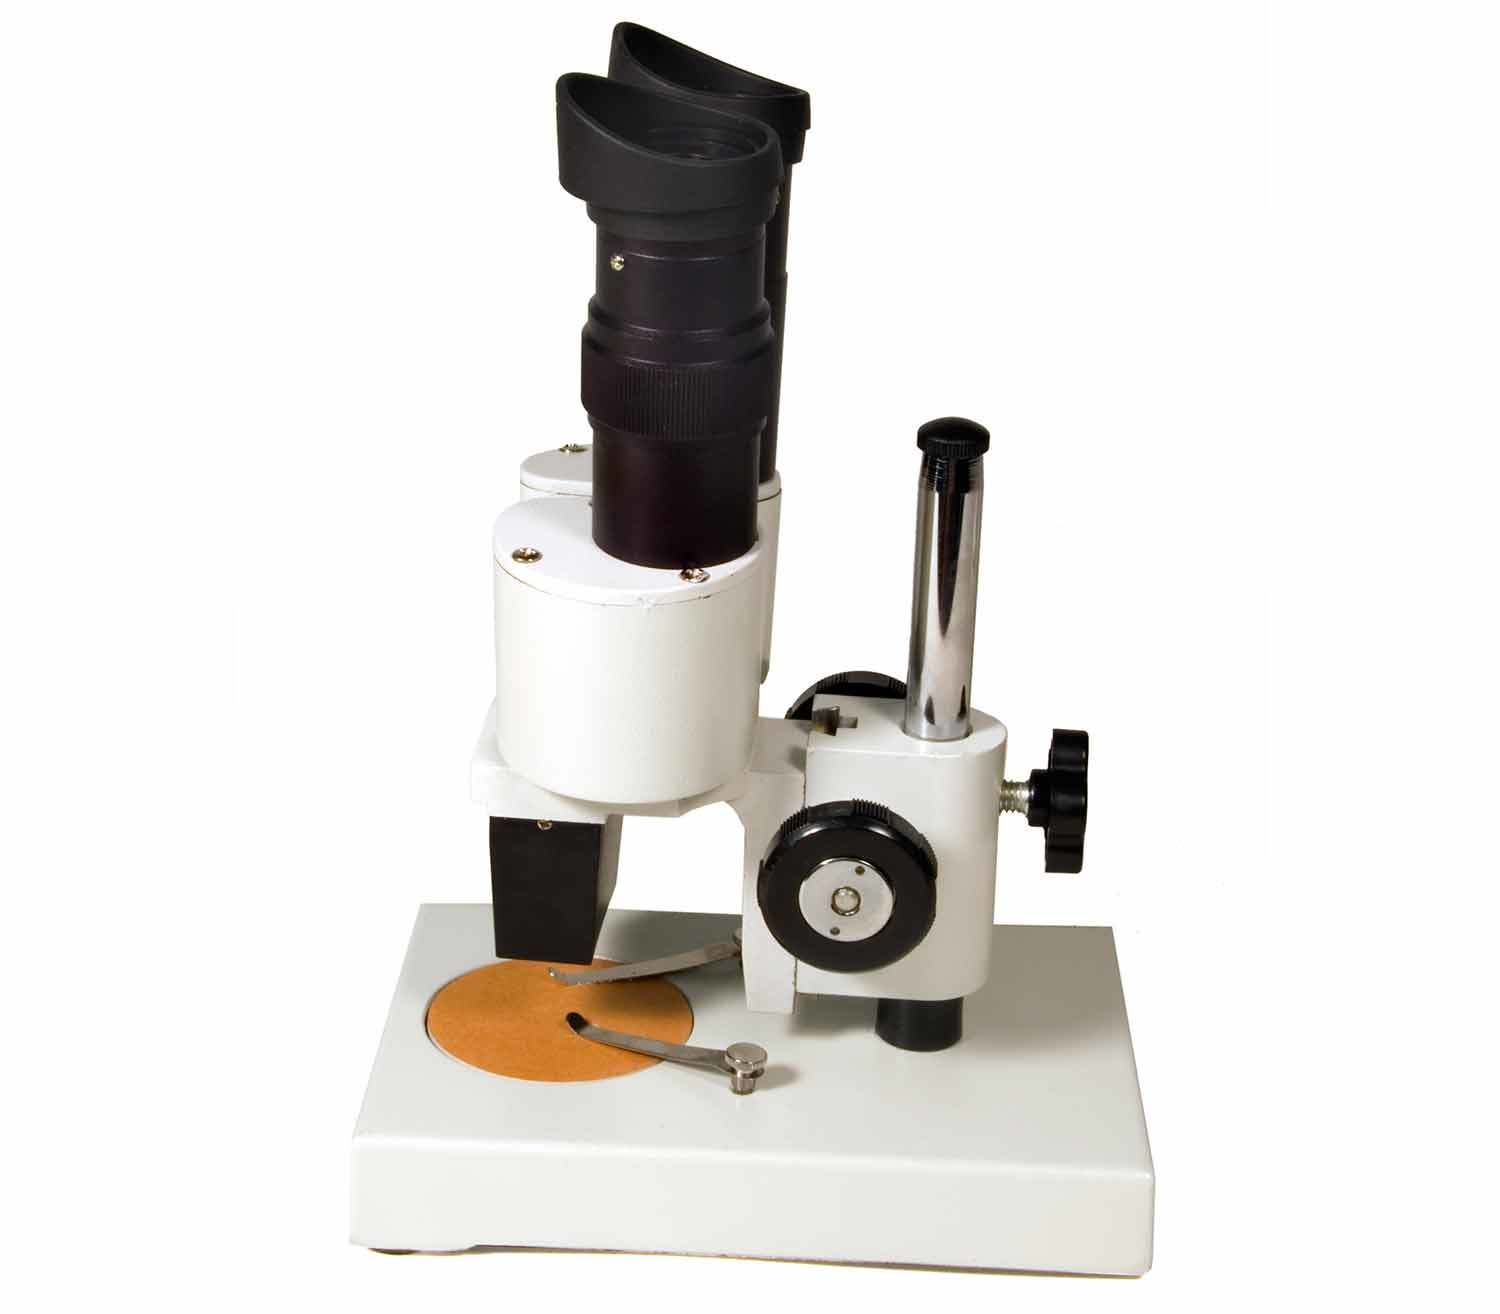 Microscopio Levenhuk 2ST lateral